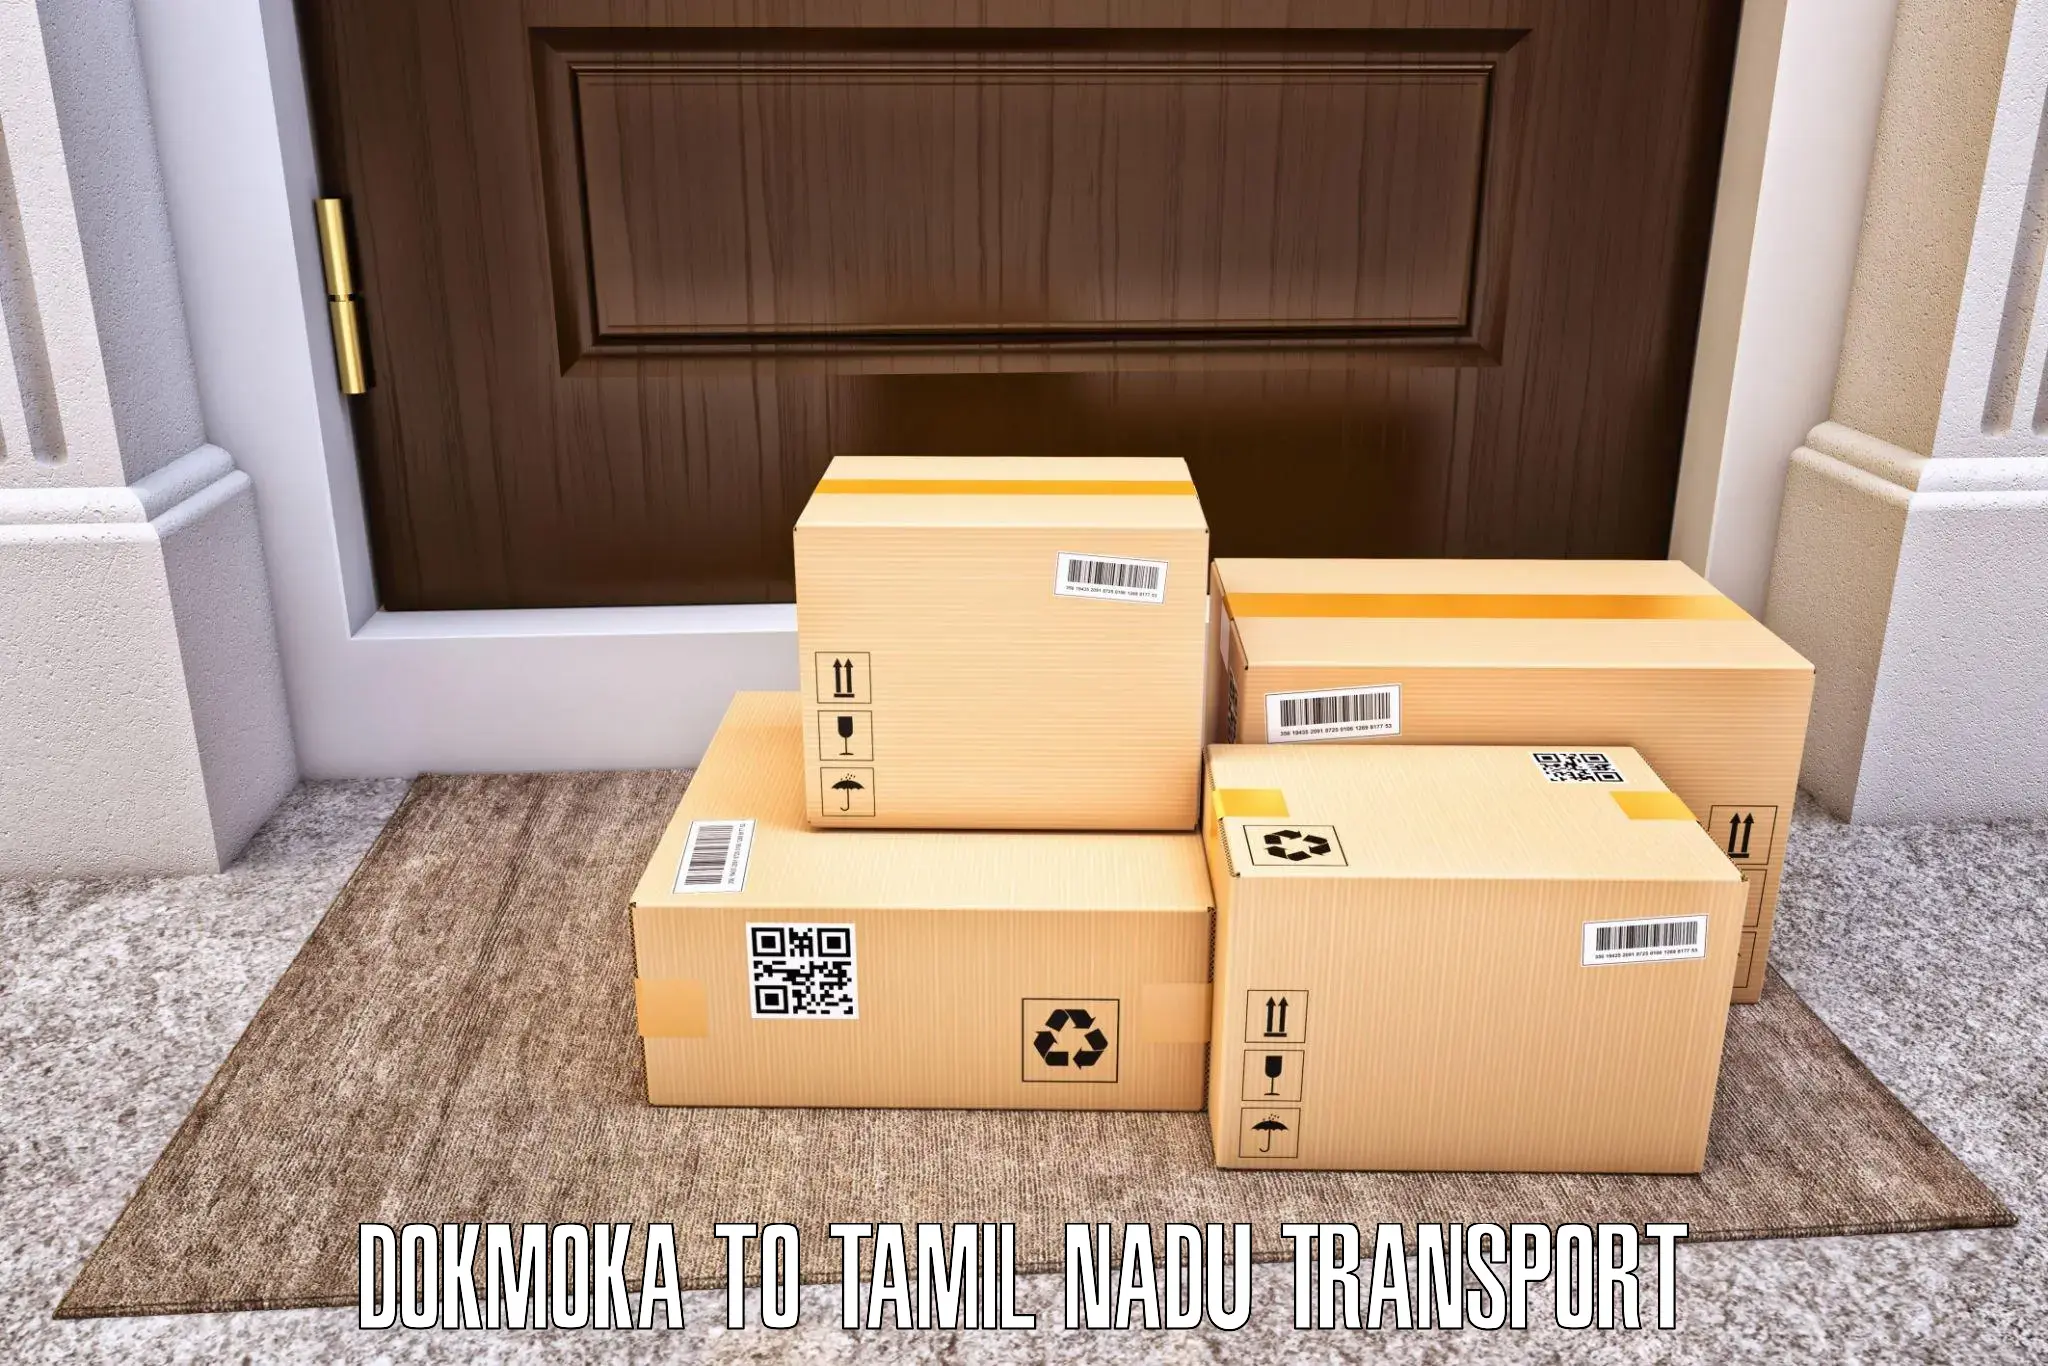 Scooty transport charges Dokmoka to Melakaveri